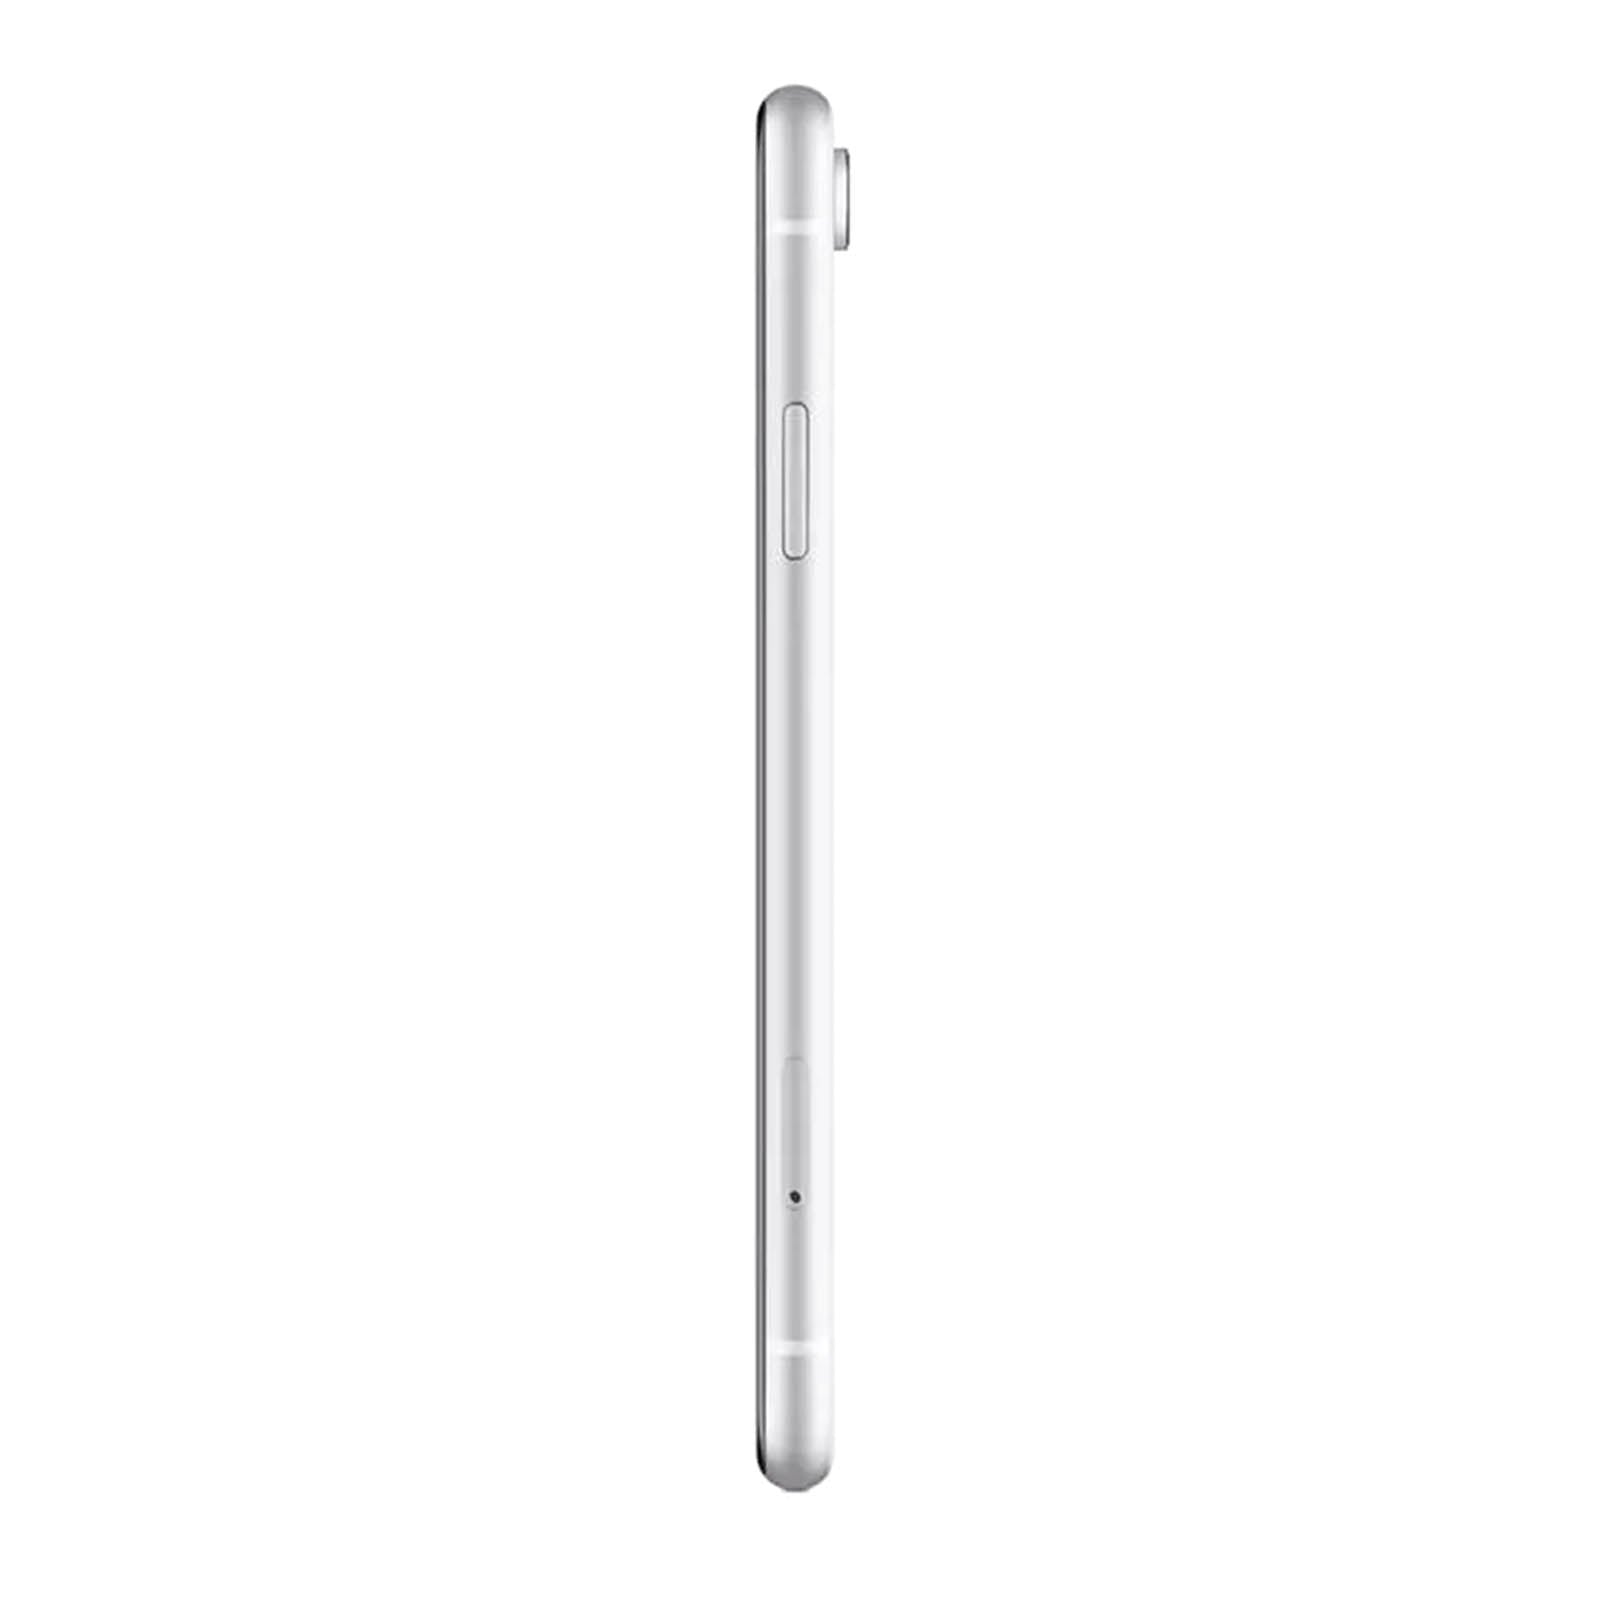 Apple iPhone XR 256GB Bianco Discreto Sbloccato